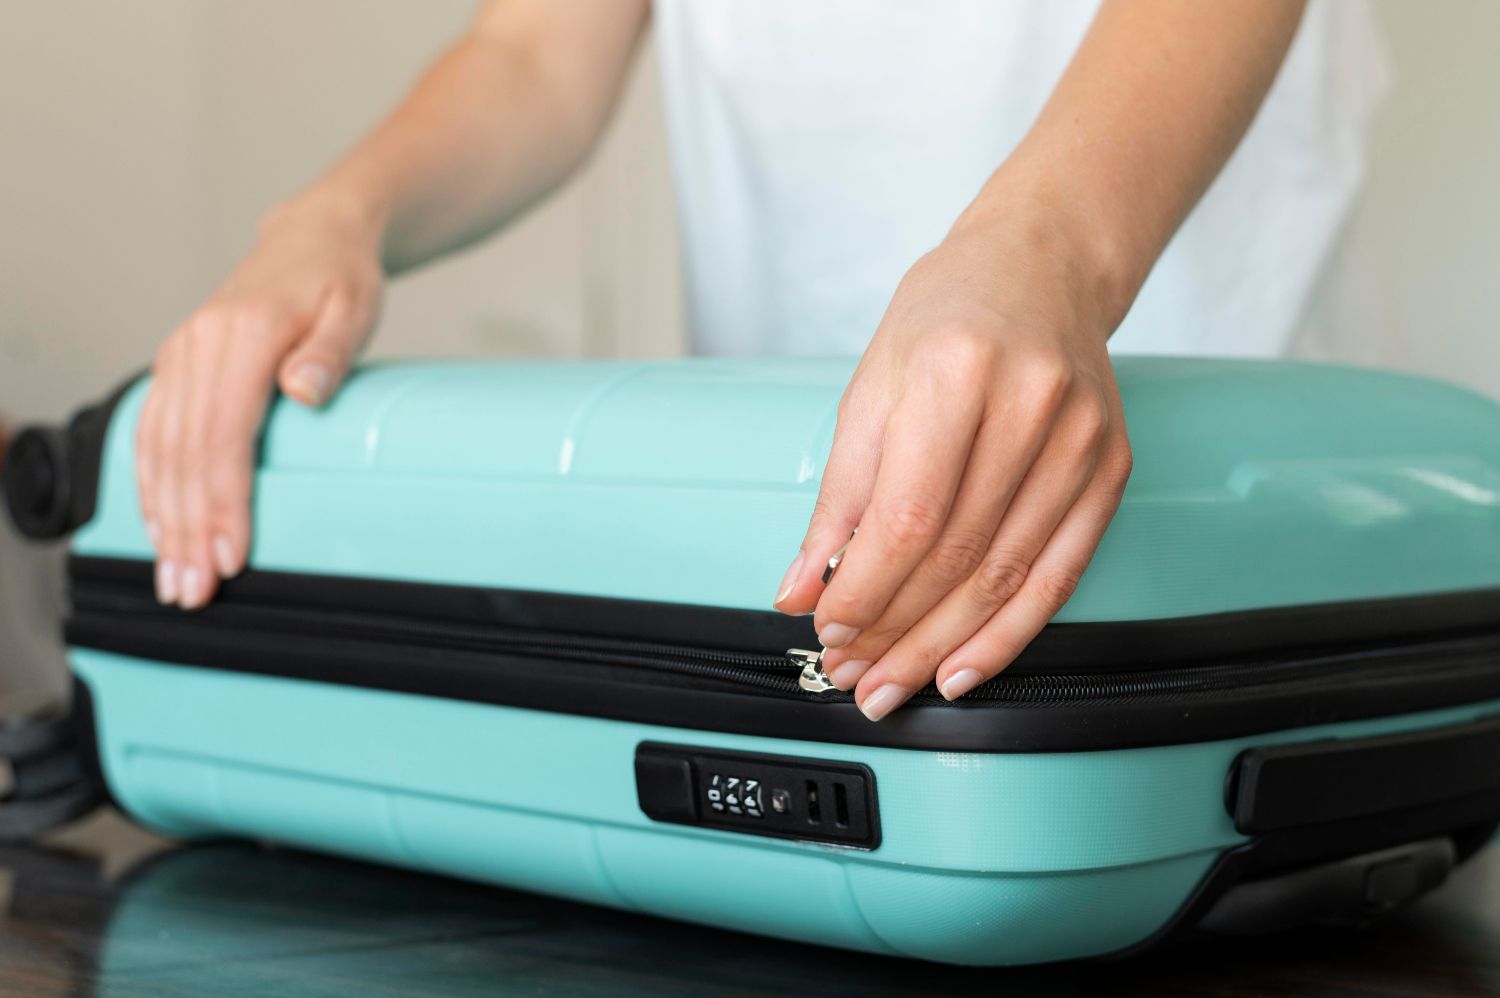 Una persona guarda comida en su equipaje de mano / FREEPIK